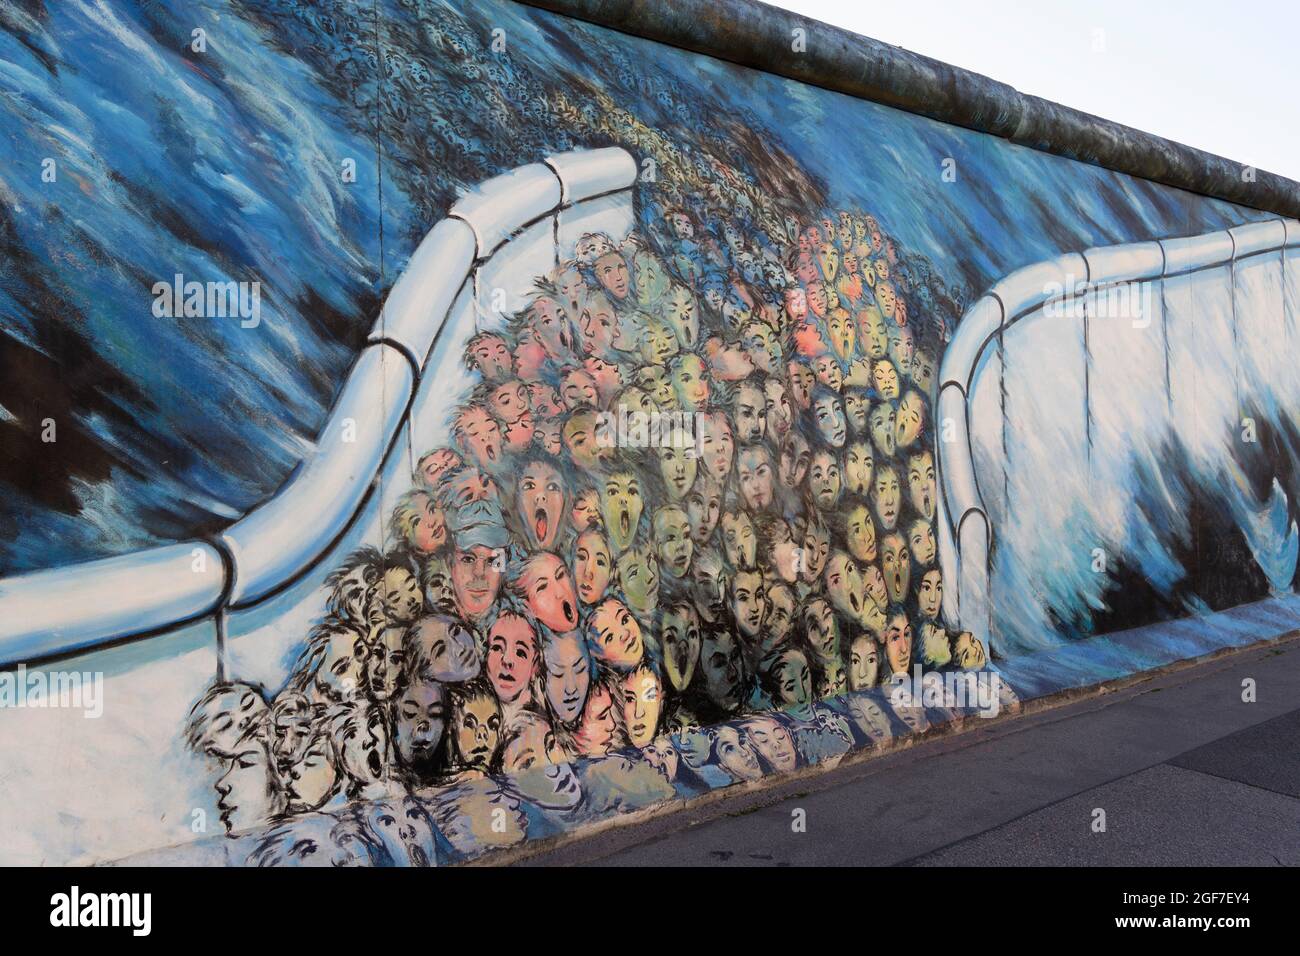 Berlin Wall, East Side Gallery, It happened in November, Artist: Kani  Alavi, Warschauer Strasse, Berlin, Germany Stock Photo - Alamy